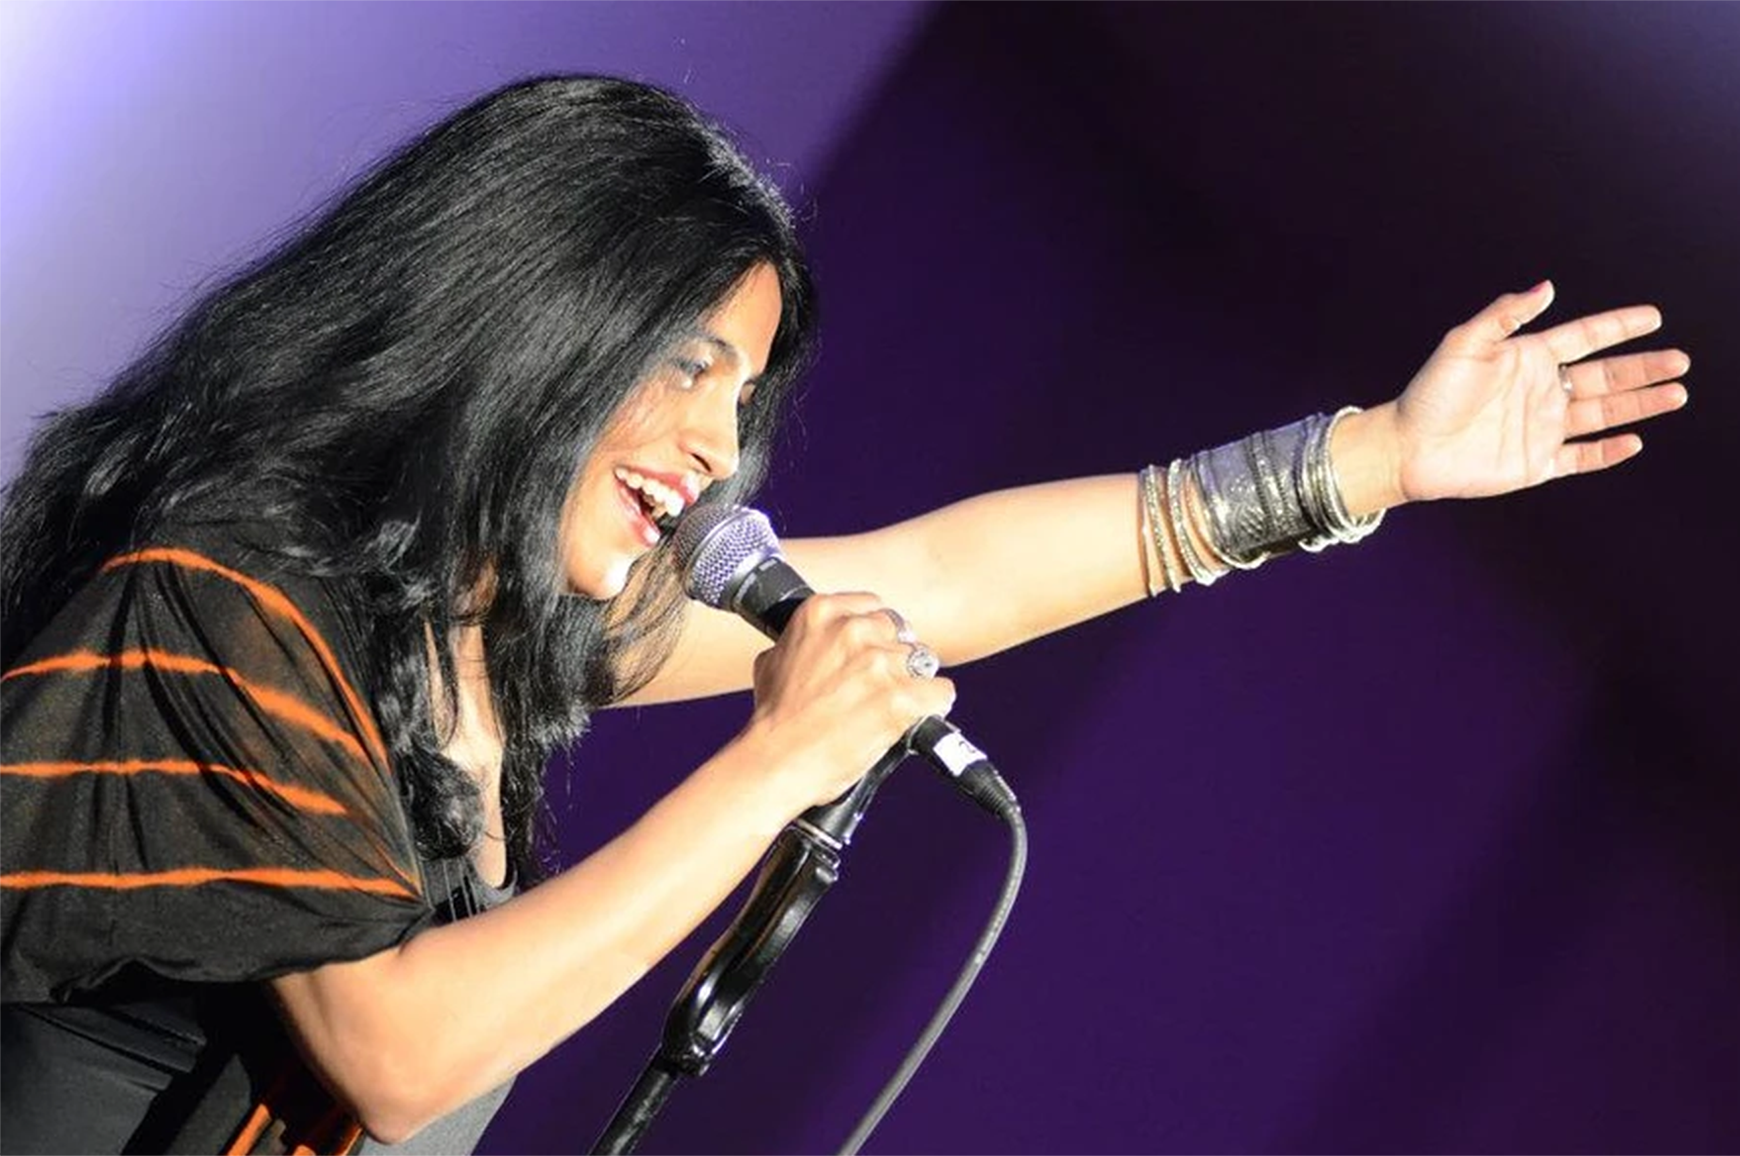 Imagem do cantor Falu segurando o microfone cantando com fundo roxo